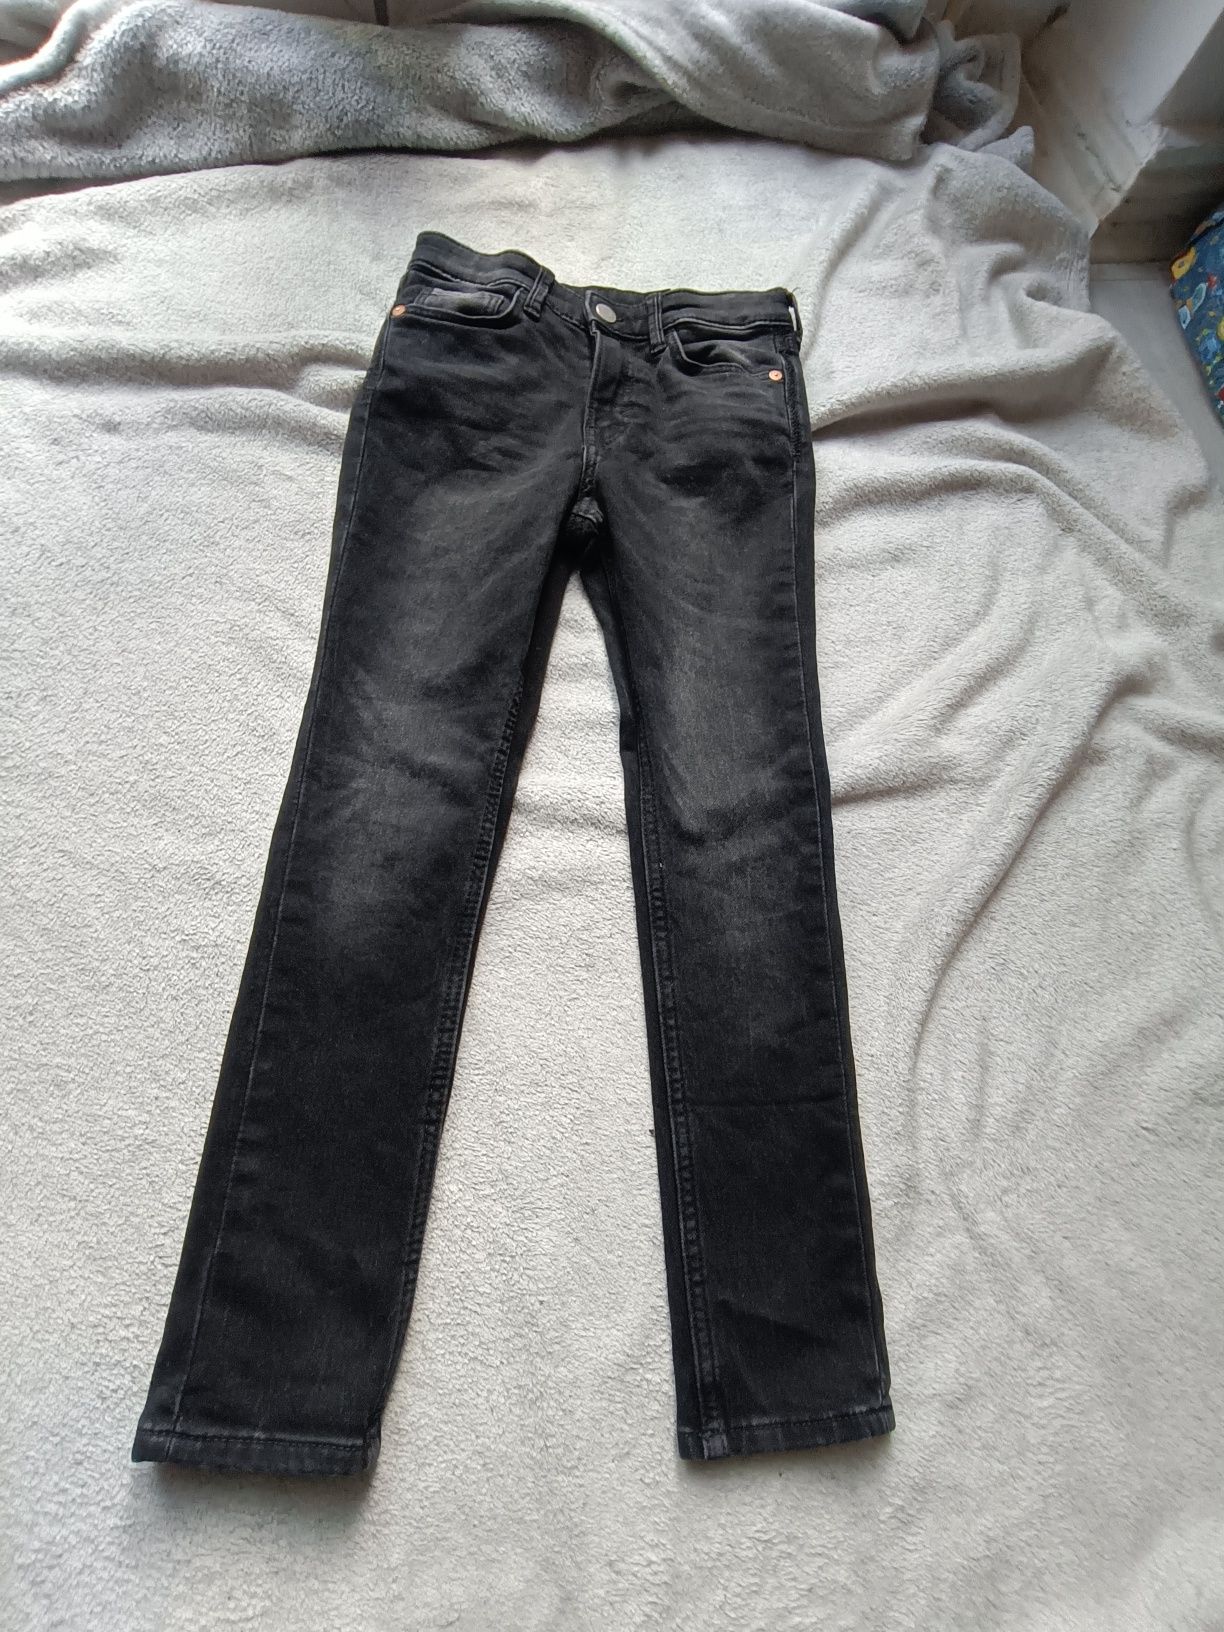 Spodnie, dżinsy czarne elastyczne h&m 122